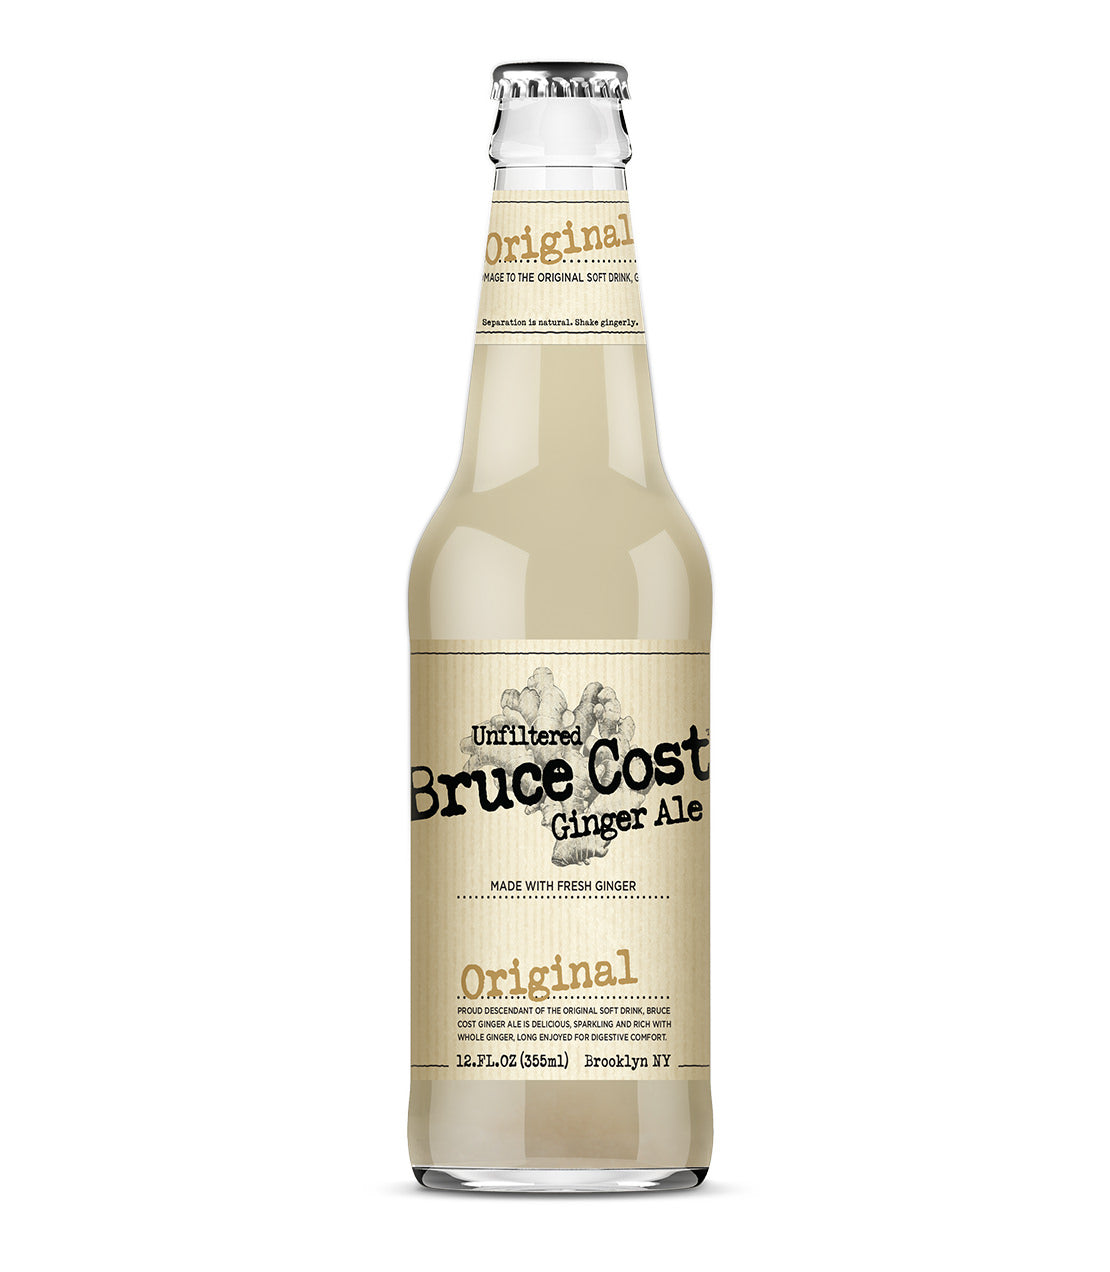 Bruce Cost Ginger Ale Original - 12 oz. Bottle Case of 12 Bottles - Harney & Sons Fine Teas